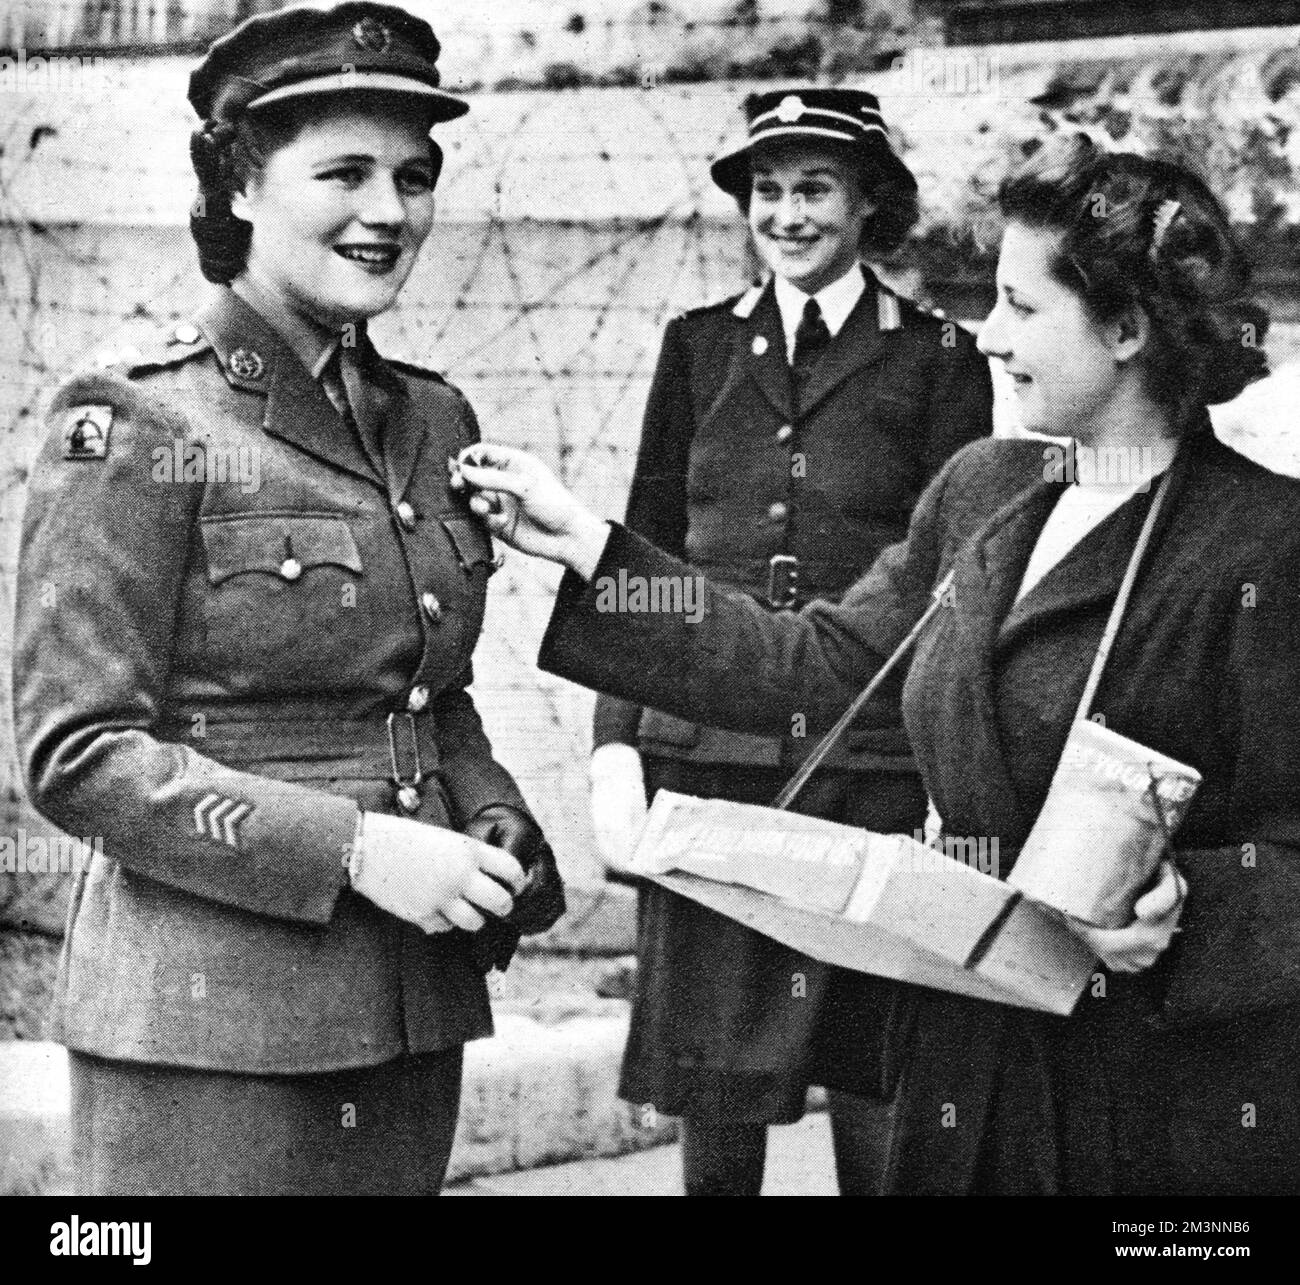 Miss Mary Churchill, die jüngste Tochter von Winston Churchill, unterstützte den Tag der russischen Flagge ihrer Mutter und kaufte ihr Emblem vom Krankenschwester Glover vom University College London Hospital. Datum: 1944 Stockfoto